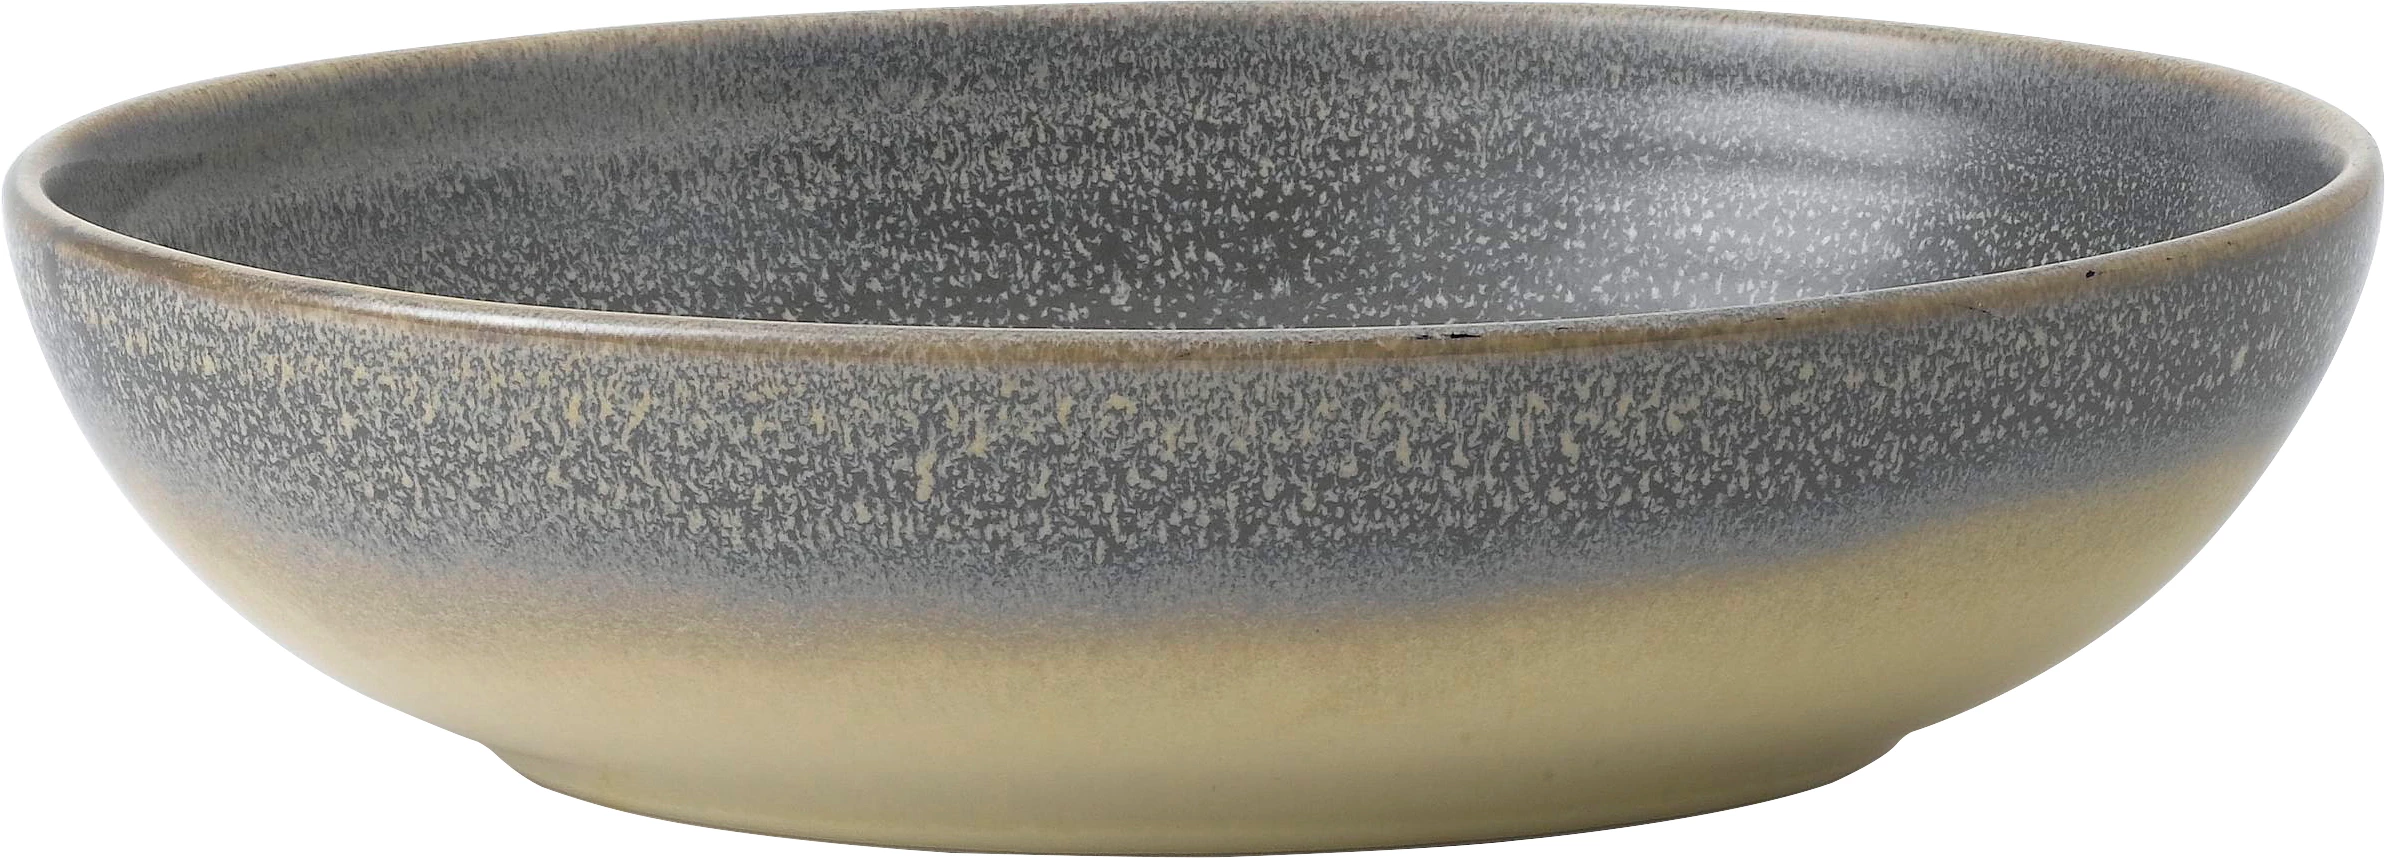 Dudson Evolution Granite skål, oval, granit, 21,6 x 16,4 cm